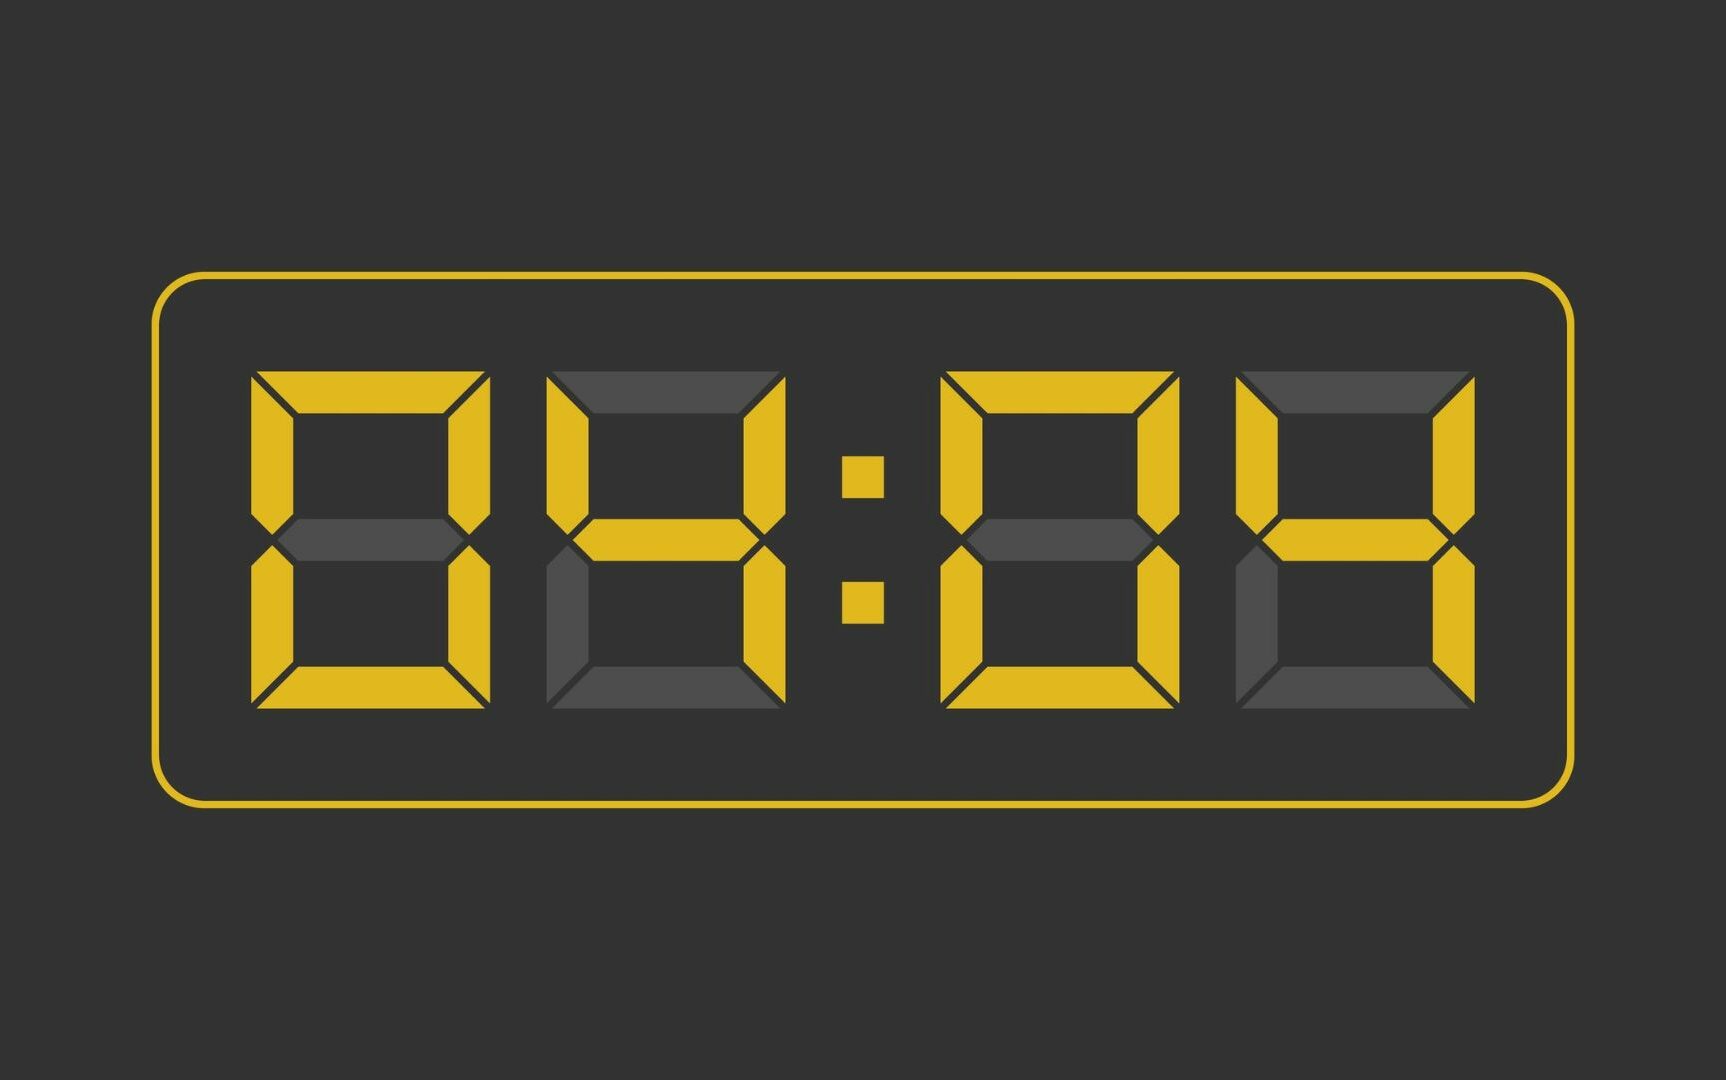 Uma ilustração digital de um relógio indicando as horas iguais 04:04.